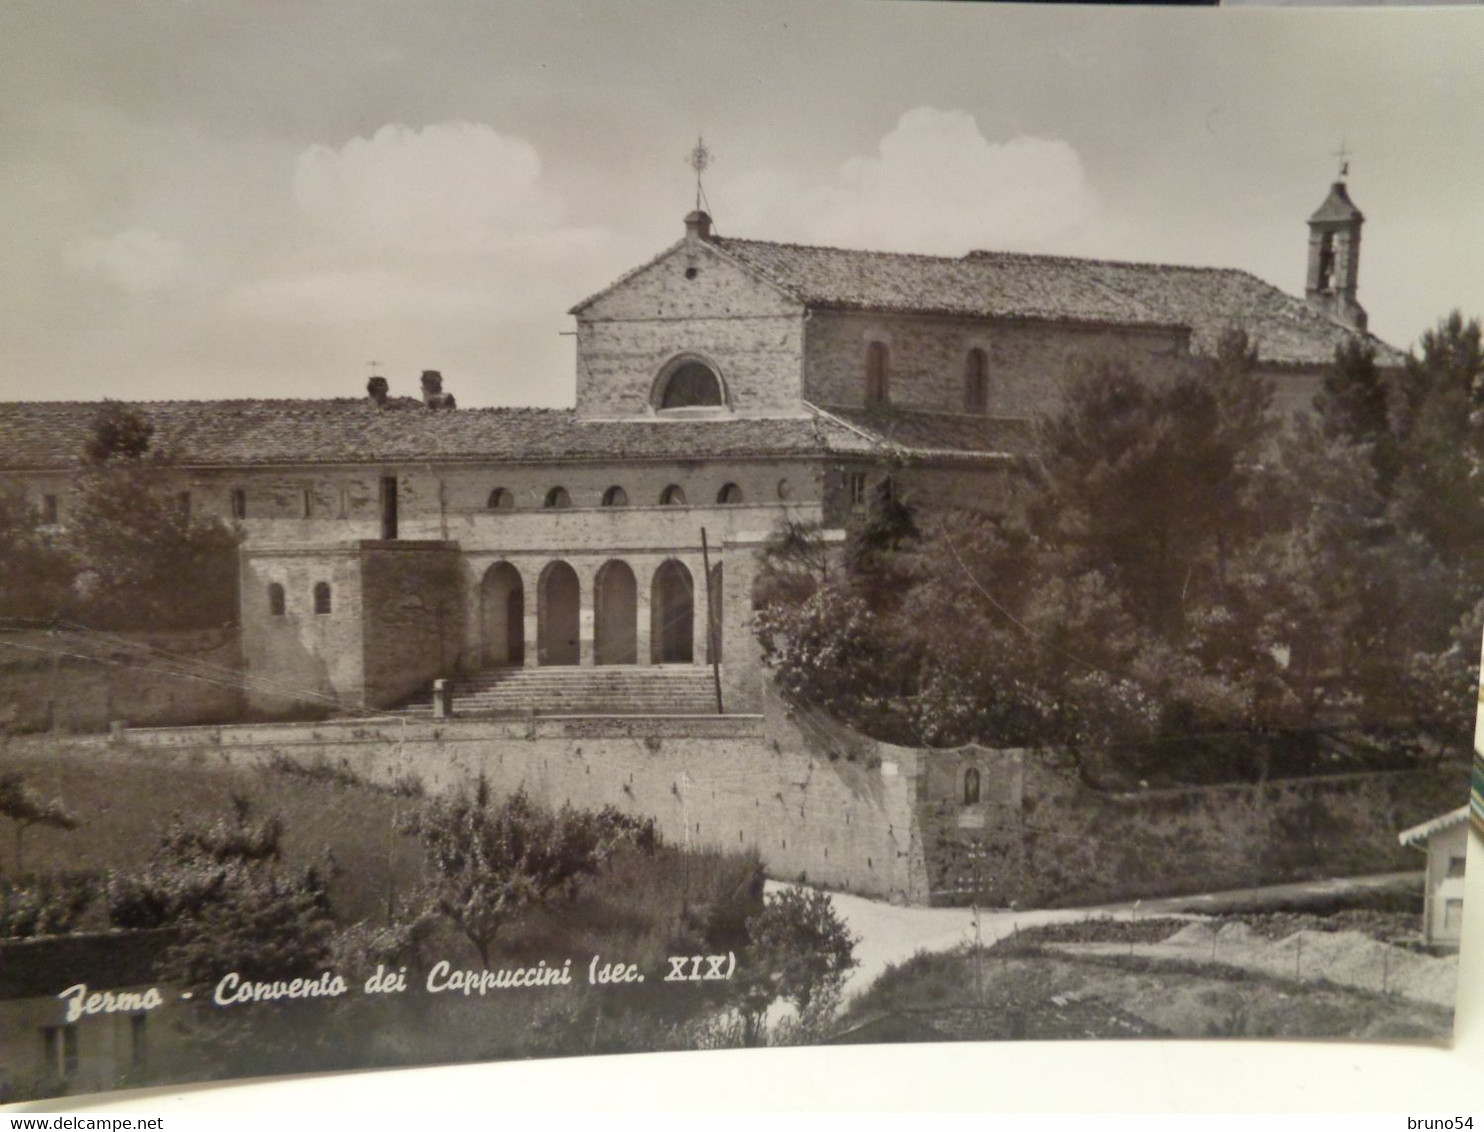 2 Cartoline Di Fermo ,convento Dei Capuccini E Fontana Del Girfalco E Cattedrale - Fermo